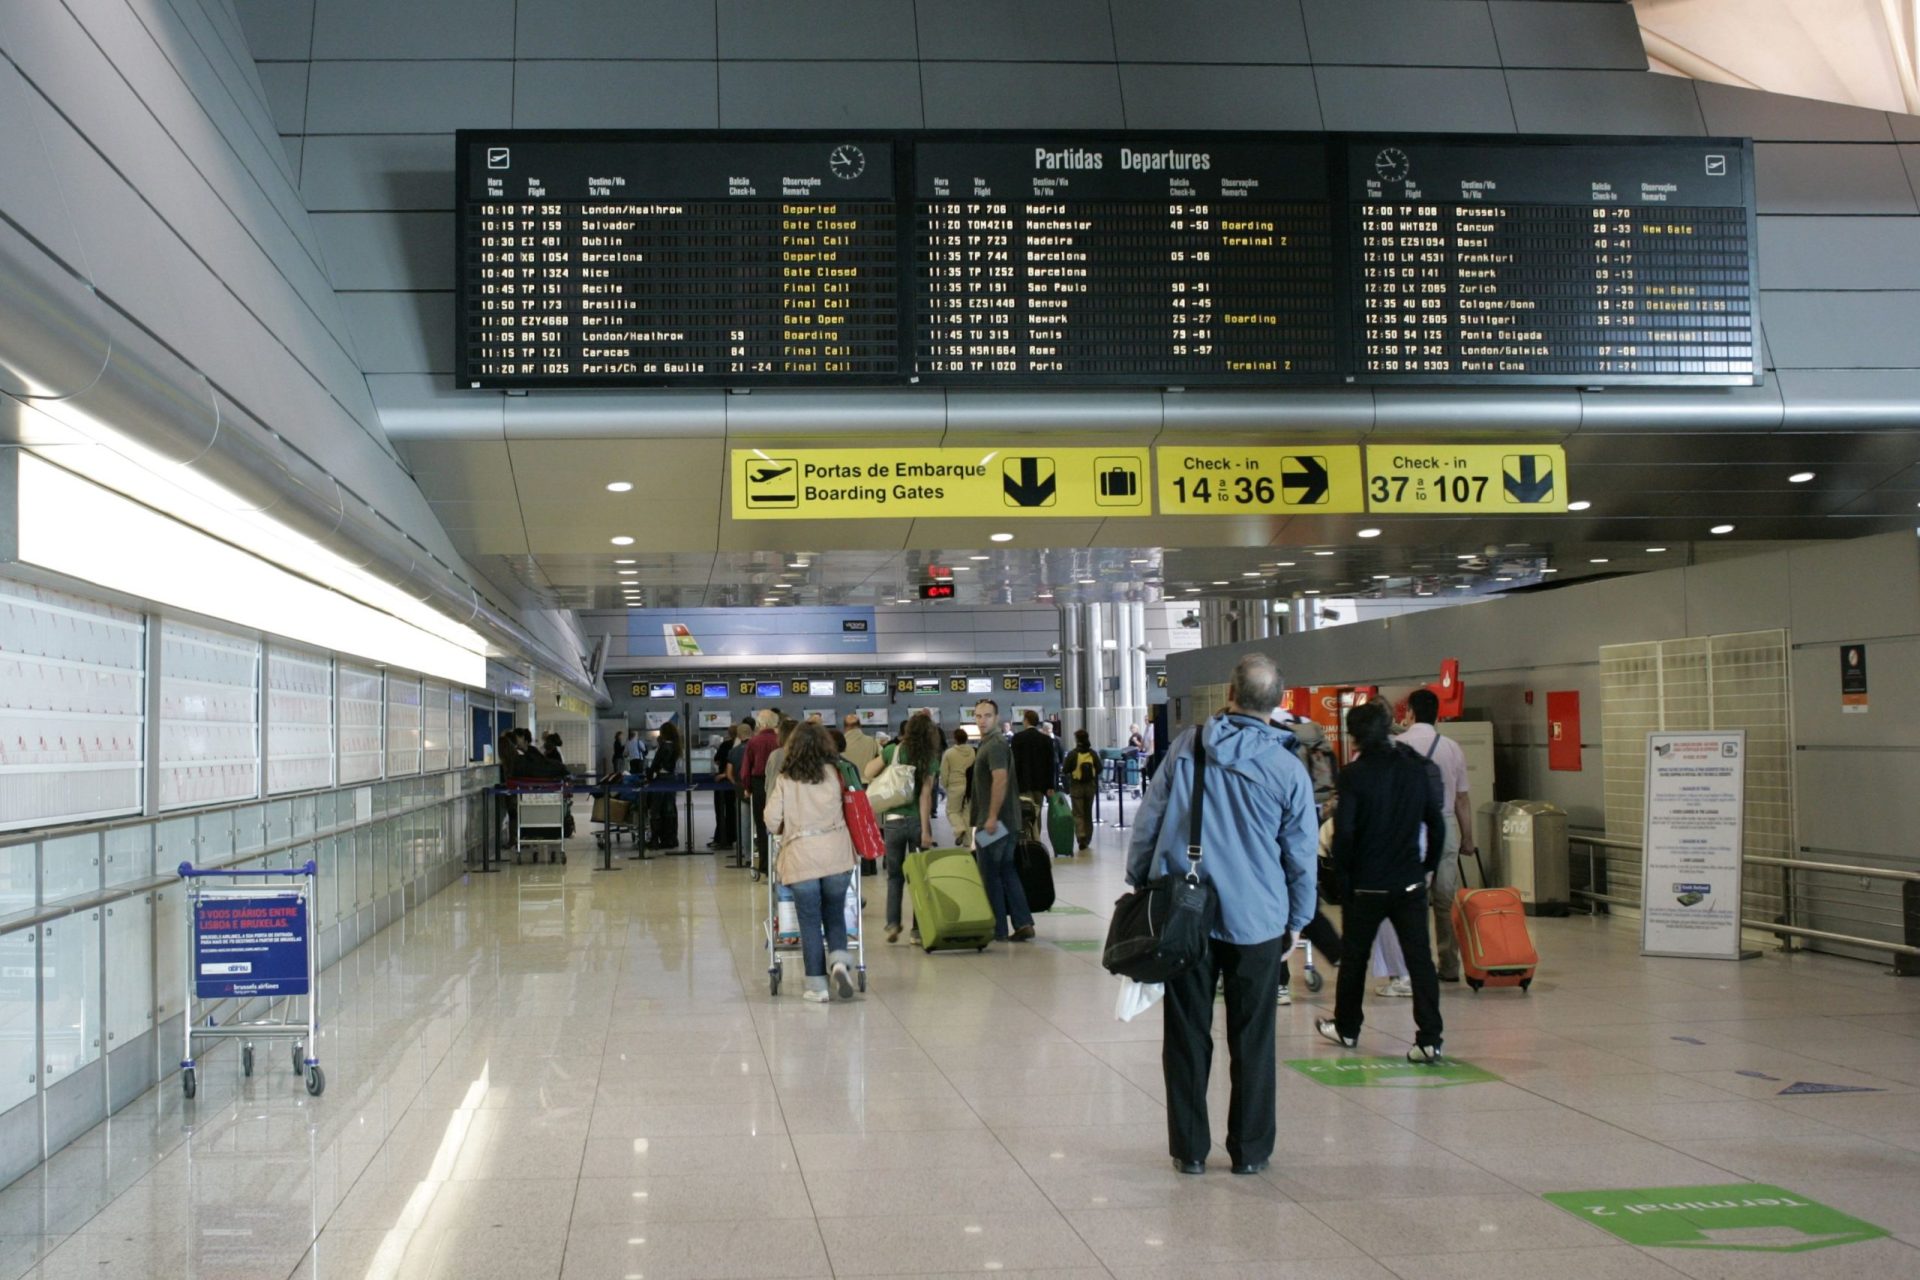 Funcionário da Groundforce agredido “brutalmente” por dois passageiros no aeroporto de Lisboa